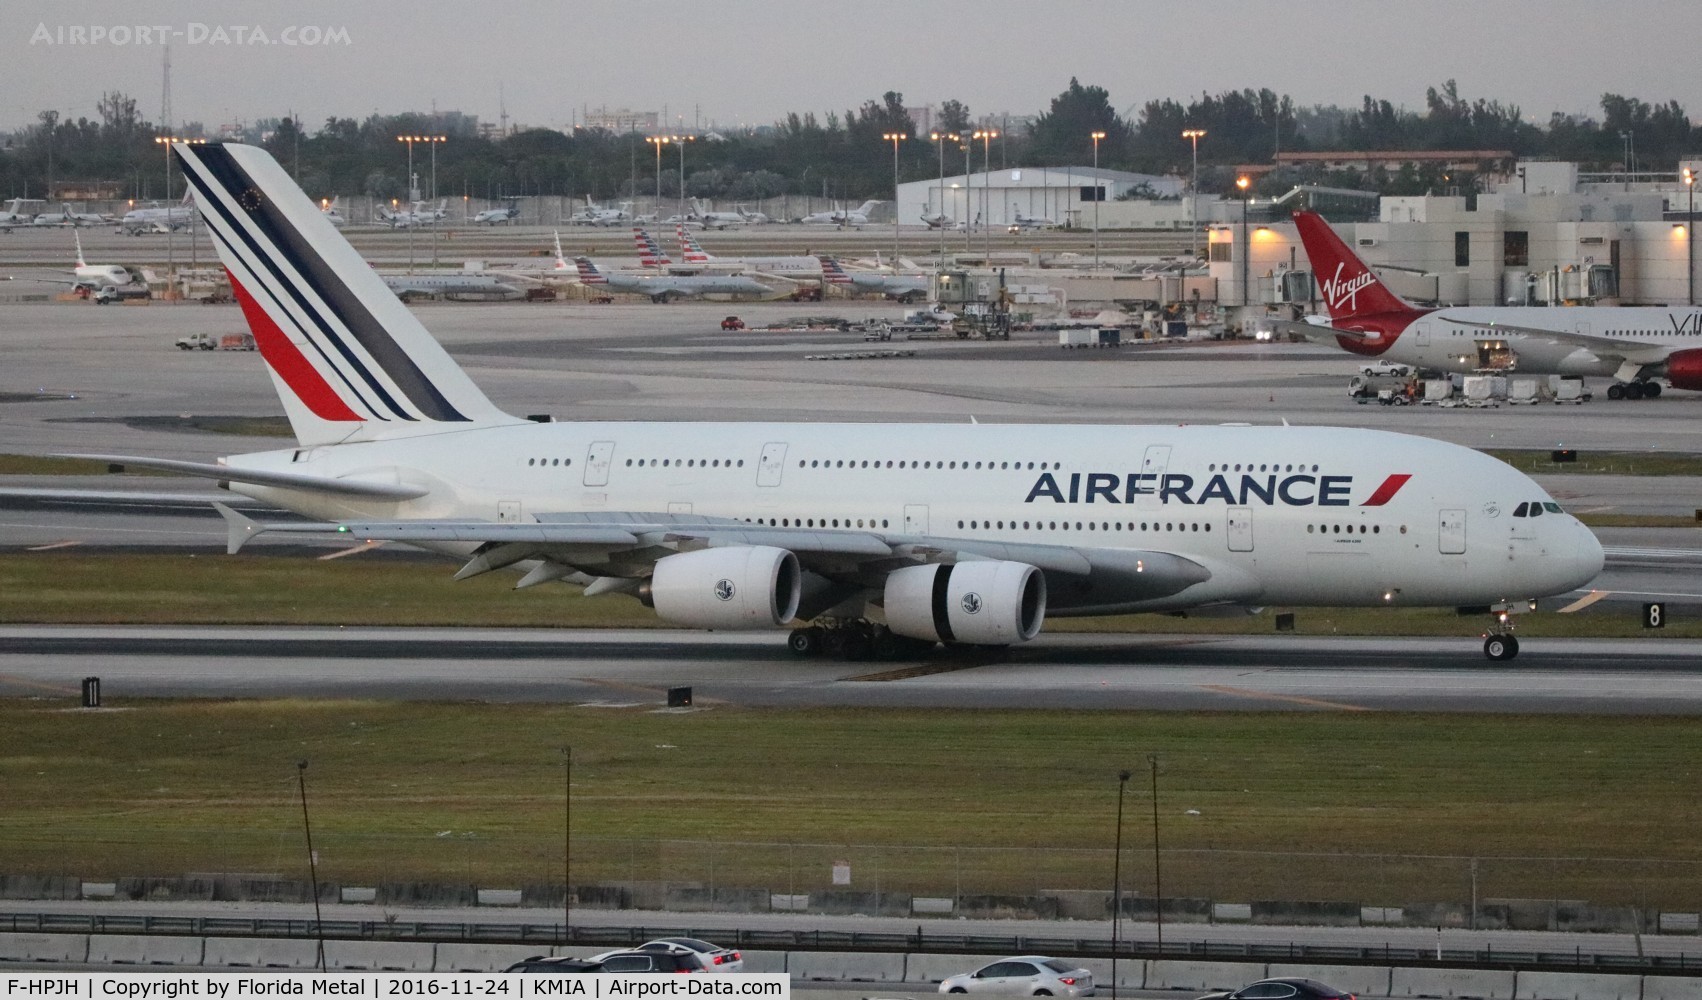 F-HPJH, 2011 Airbus A380-861 C/N 099, Air France A380 zx